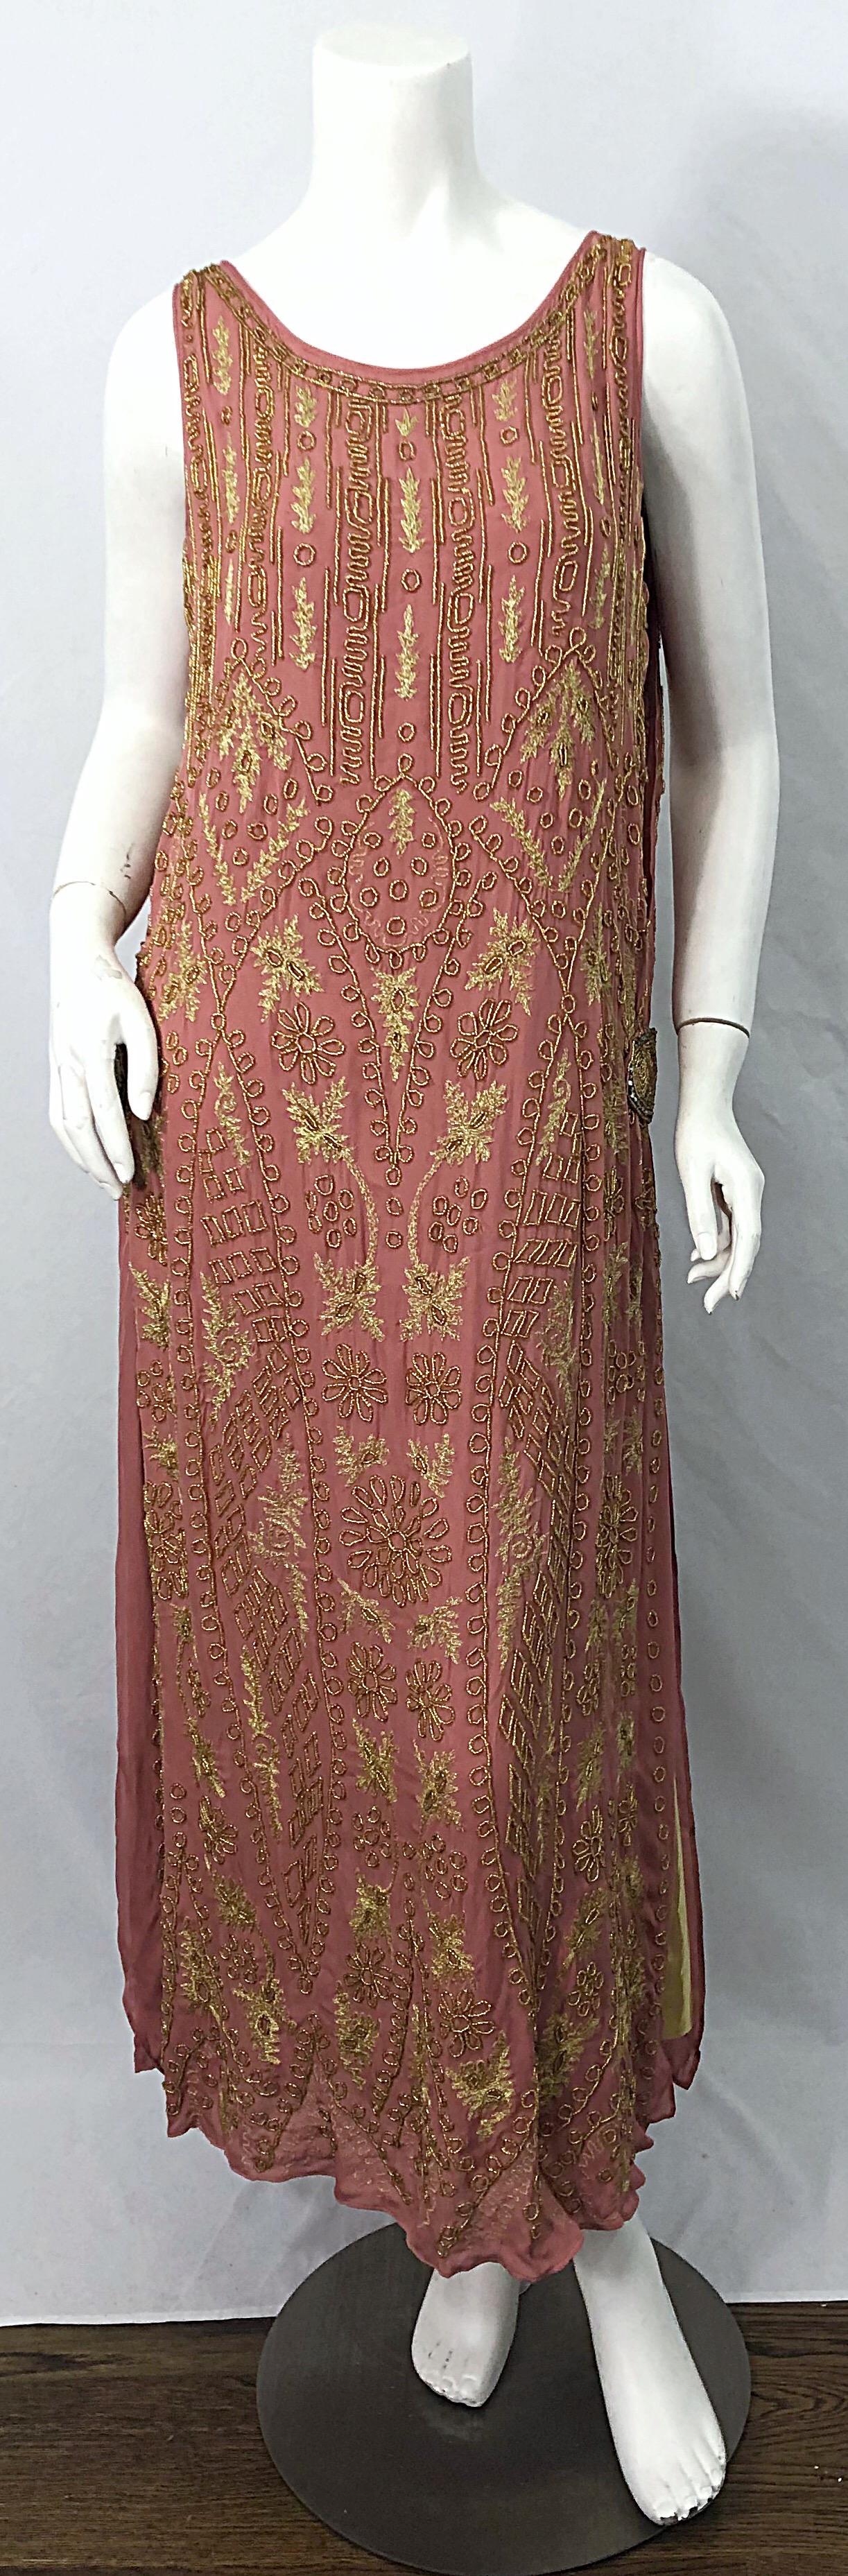 Phenomenal 1920er Jahre Französisch Couture rosa und gold Perlen Gatsby-Stil Flapper Kleid ! Es ist in einem wunderschönen Roséton gehalten und hat goldene Lamellen an jedem Schlitz. Strassbesetzte Schnallendetails an jeder Hüfte. Wird einfach über